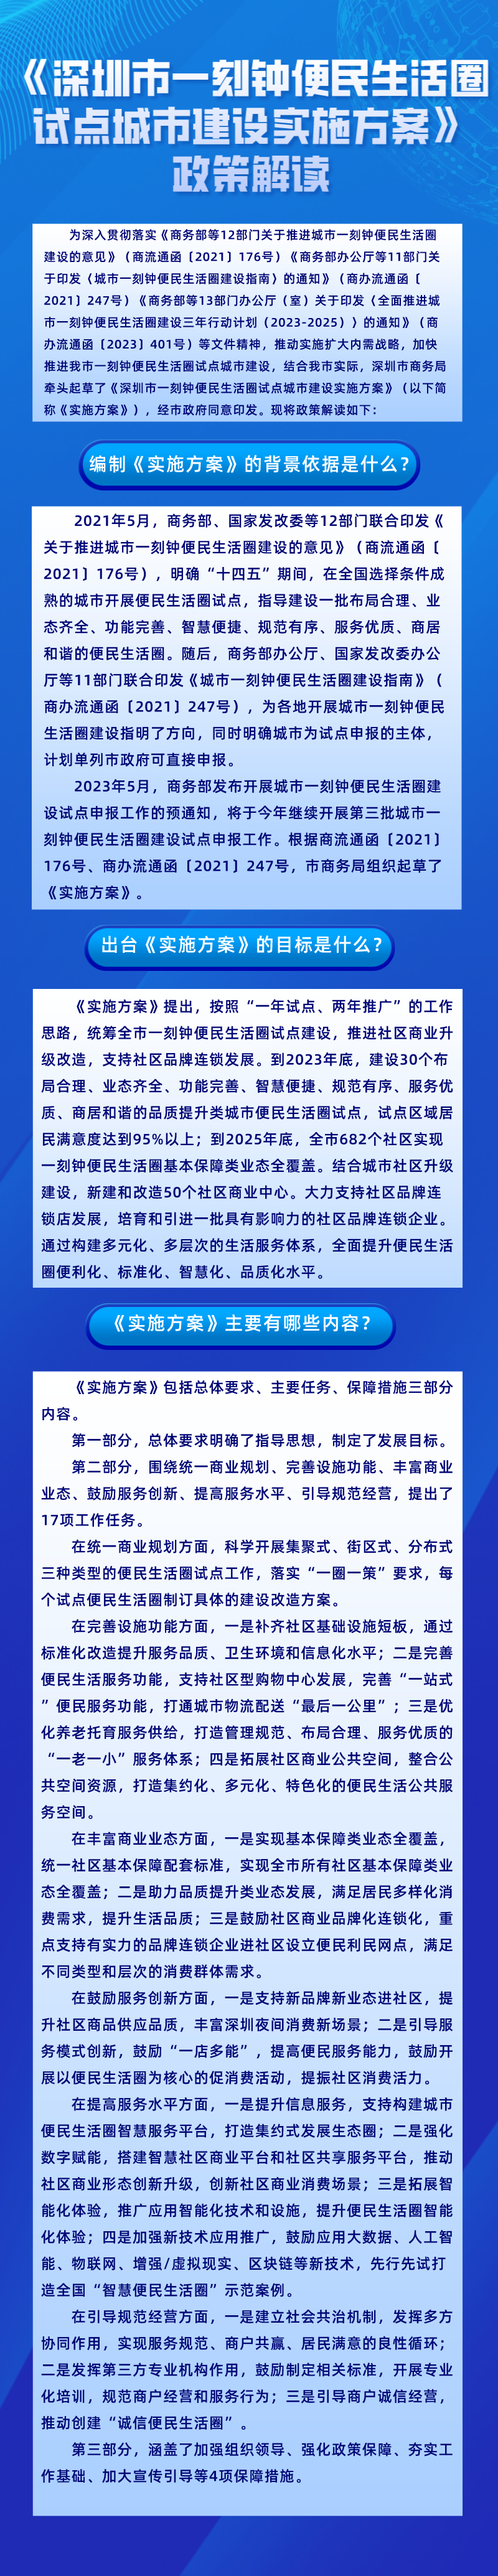 图解：《深圳市一刻钟便民生活圈试点城市建设实施方案》政策解读.png